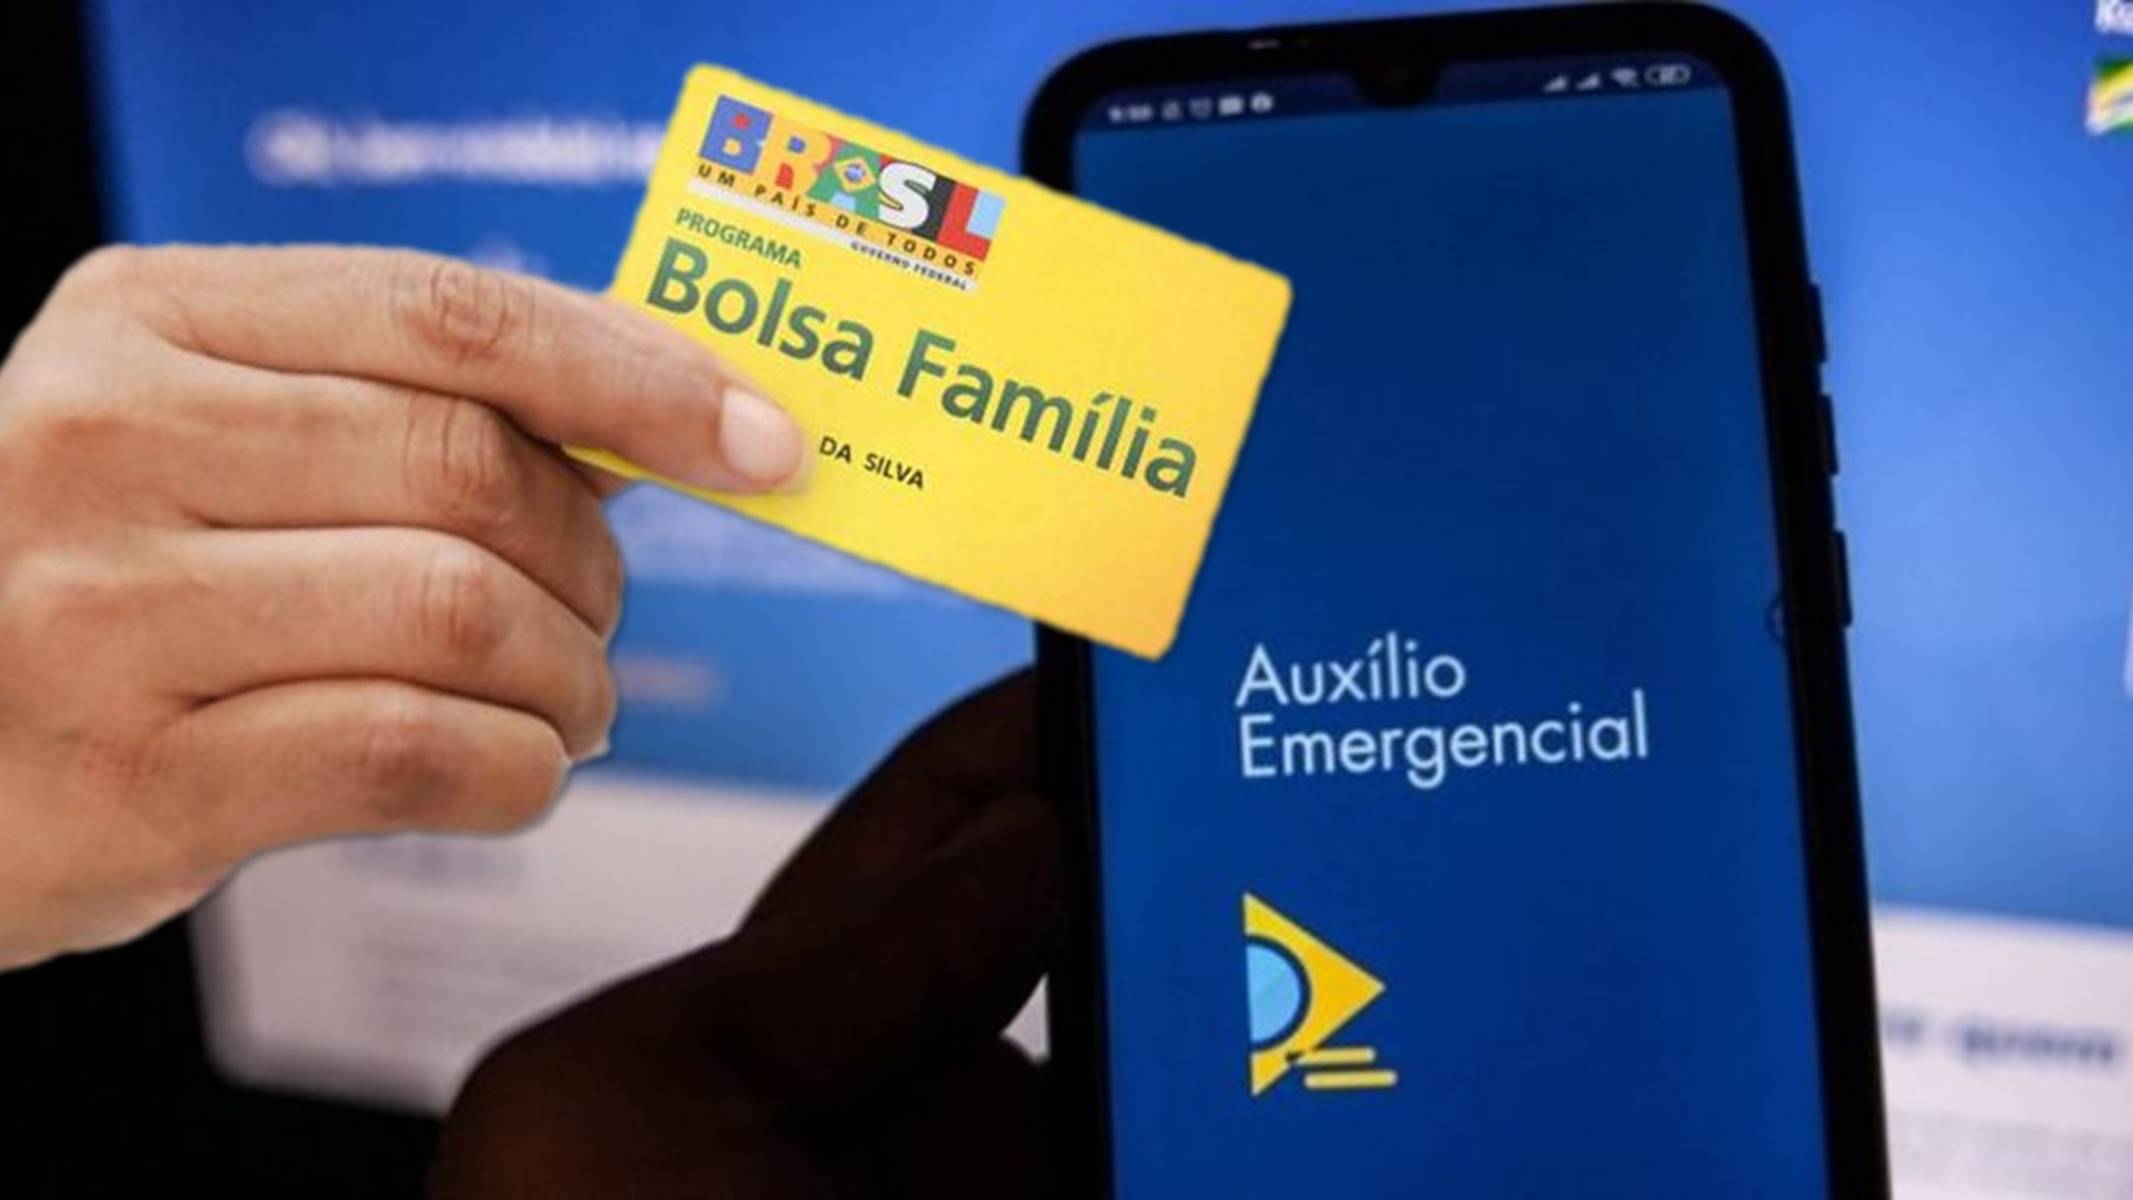 Beneficiários Do Bolsa Família Podem Contestar Auxílio Emergencial Negado